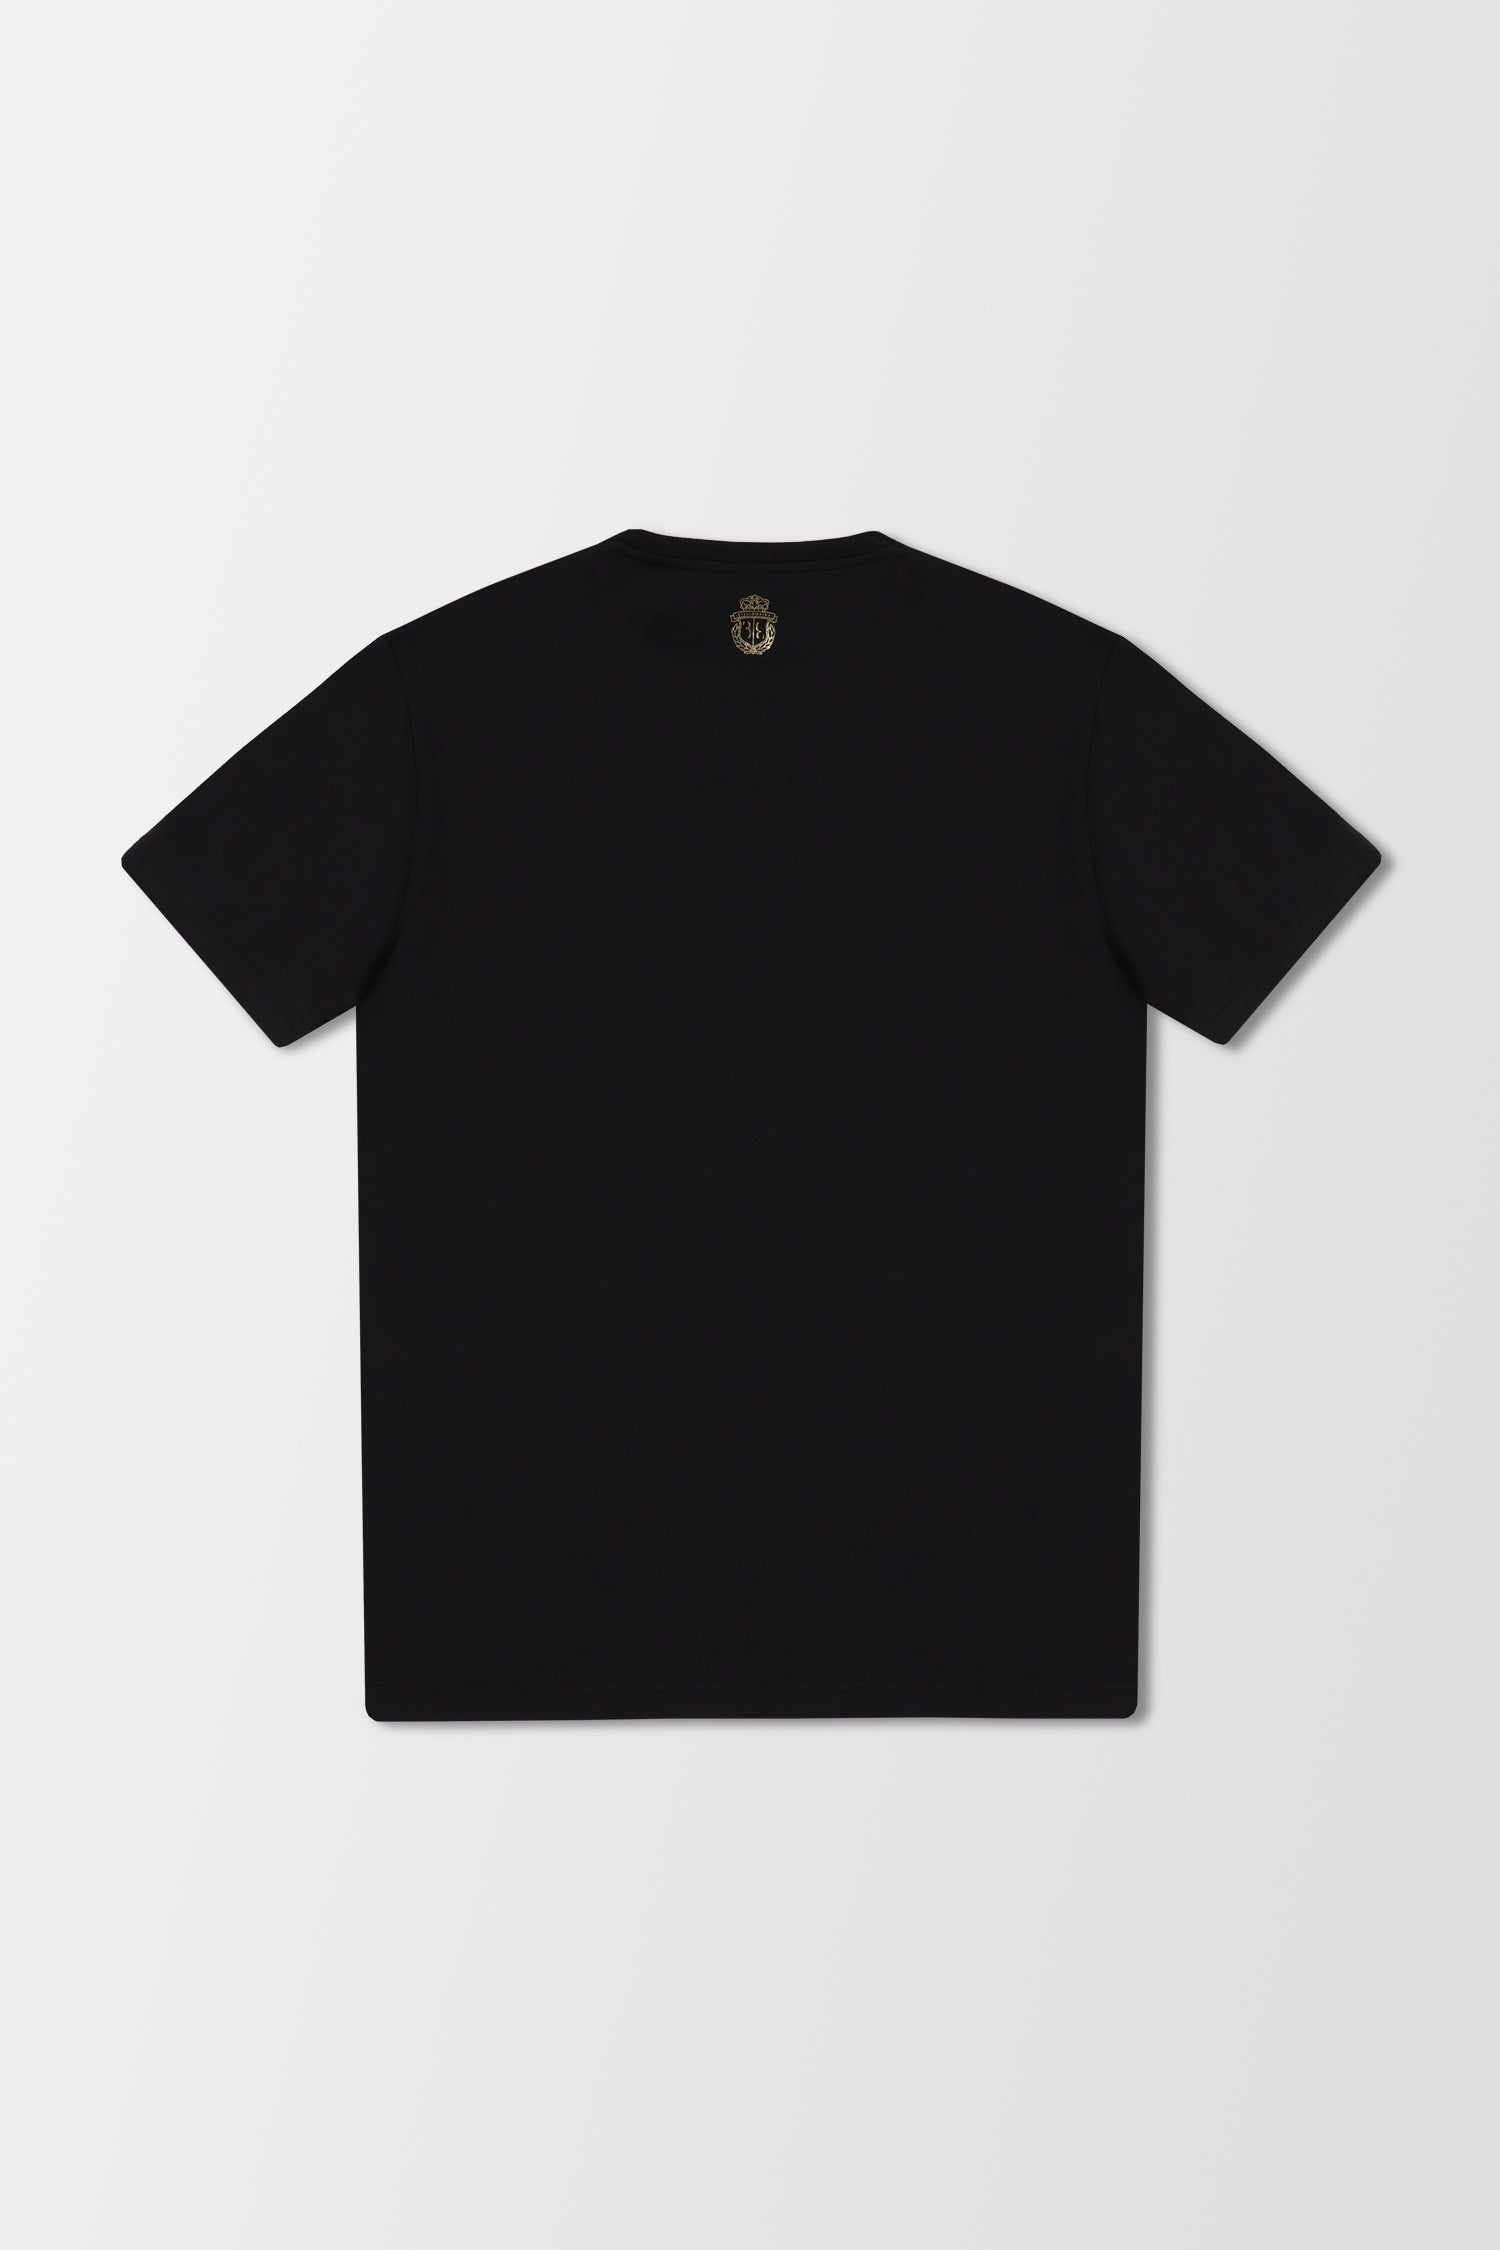 Billionaire Black SS Golden Times T-Shirt